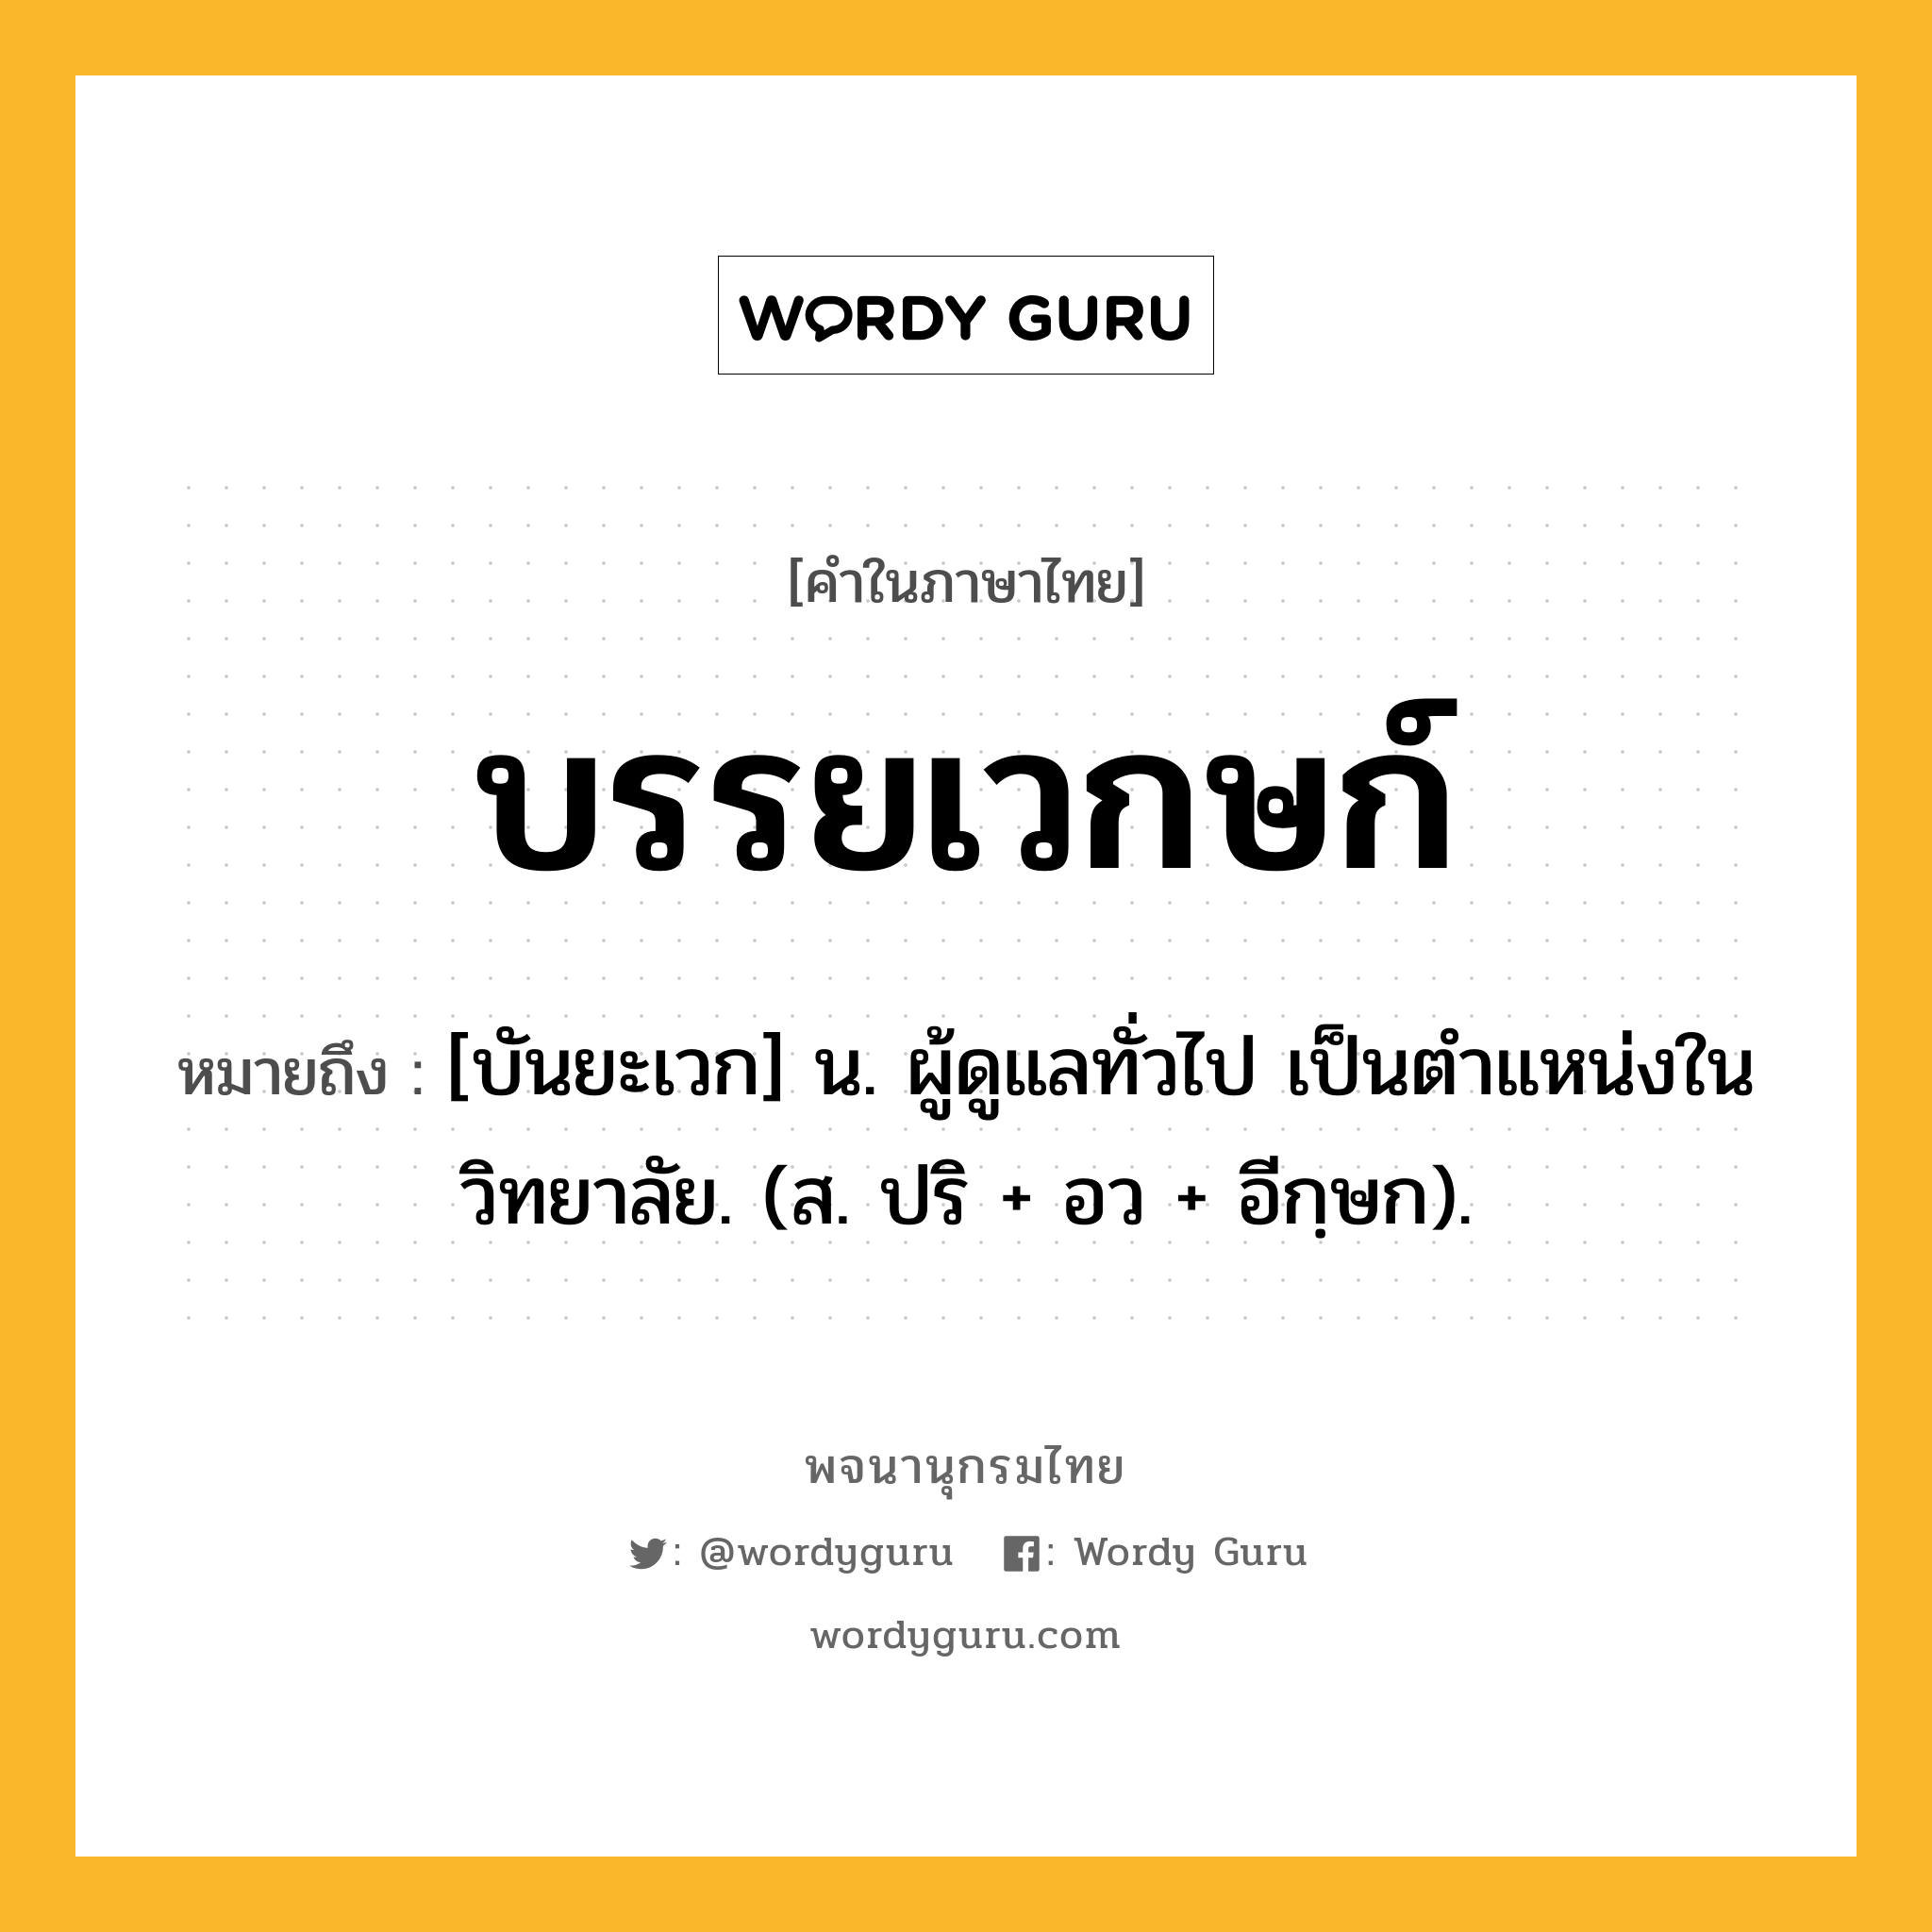 บรรยเวกษก์ ความหมาย หมายถึงอะไร?, คำในภาษาไทย บรรยเวกษก์ หมายถึง [บันยะเวก] น. ผู้ดูแลทั่วไป เป็นตําแหน่งในวิทยาลัย. (ส. ปริ + อว + อีกฺษก).